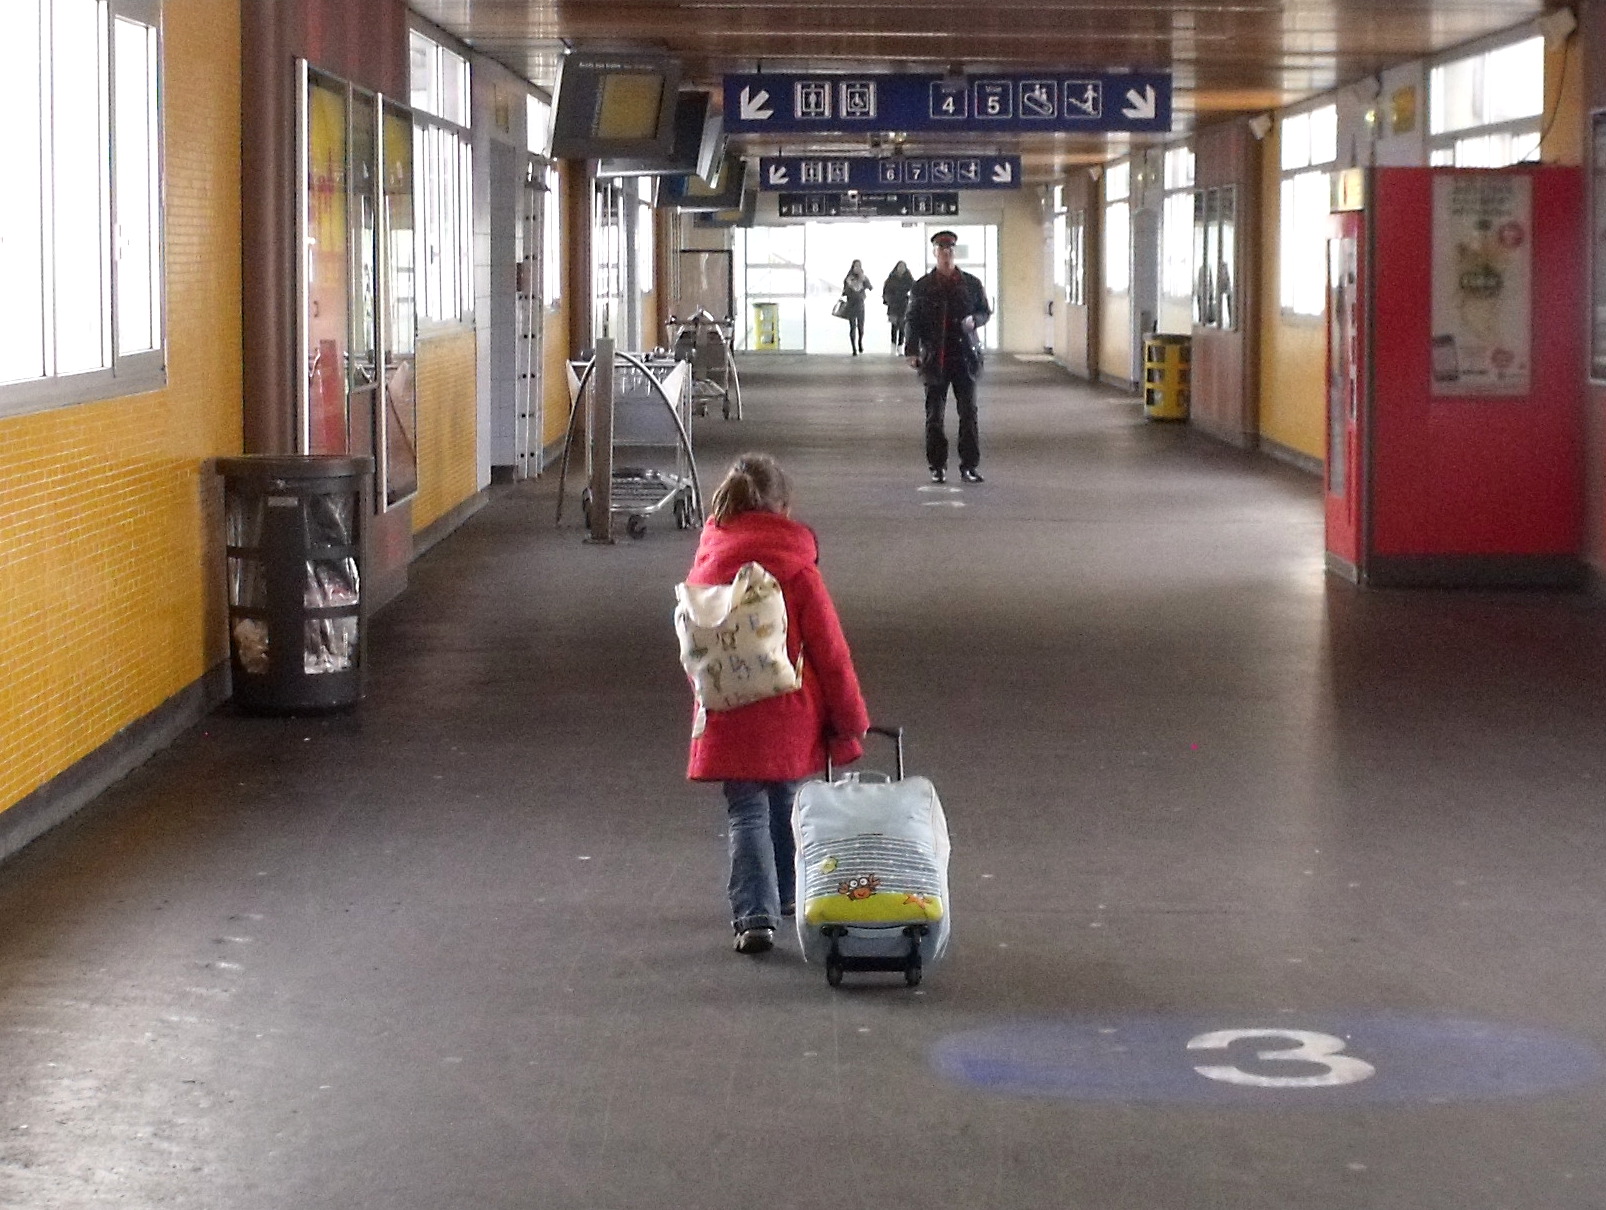 à la gare avec sa valise